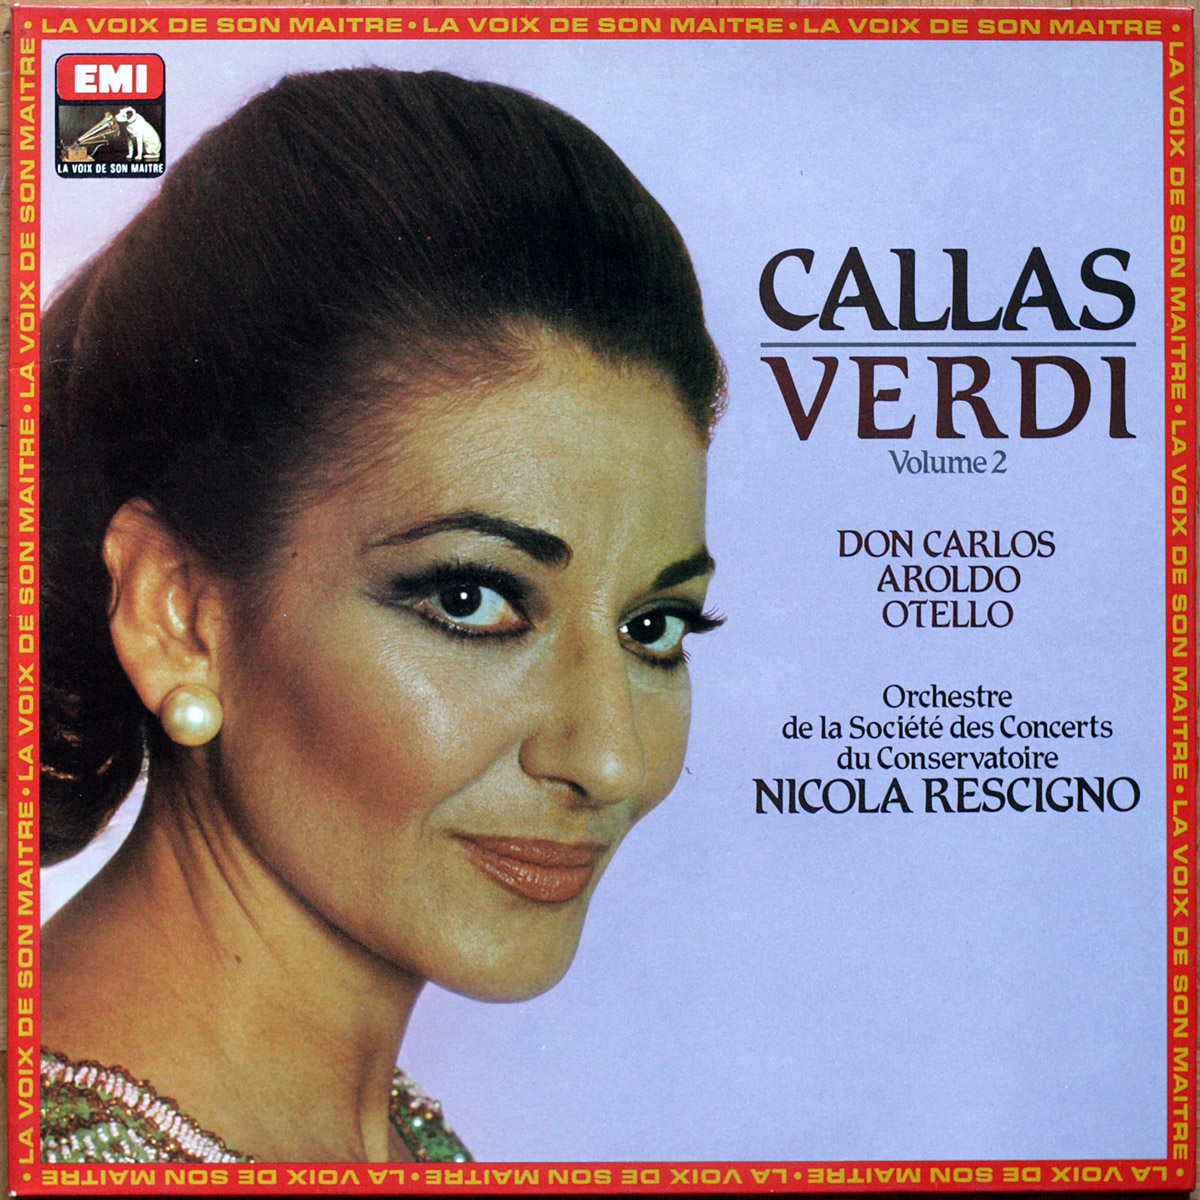 Callas • Verdi • Les héroines de Verdi • Vol. 2 • EMI 2904421 • Maria Callas • Orchestre de la Société des Concerts du Conservatoire • Philharmonia Orchestra • Nicola Rescigno